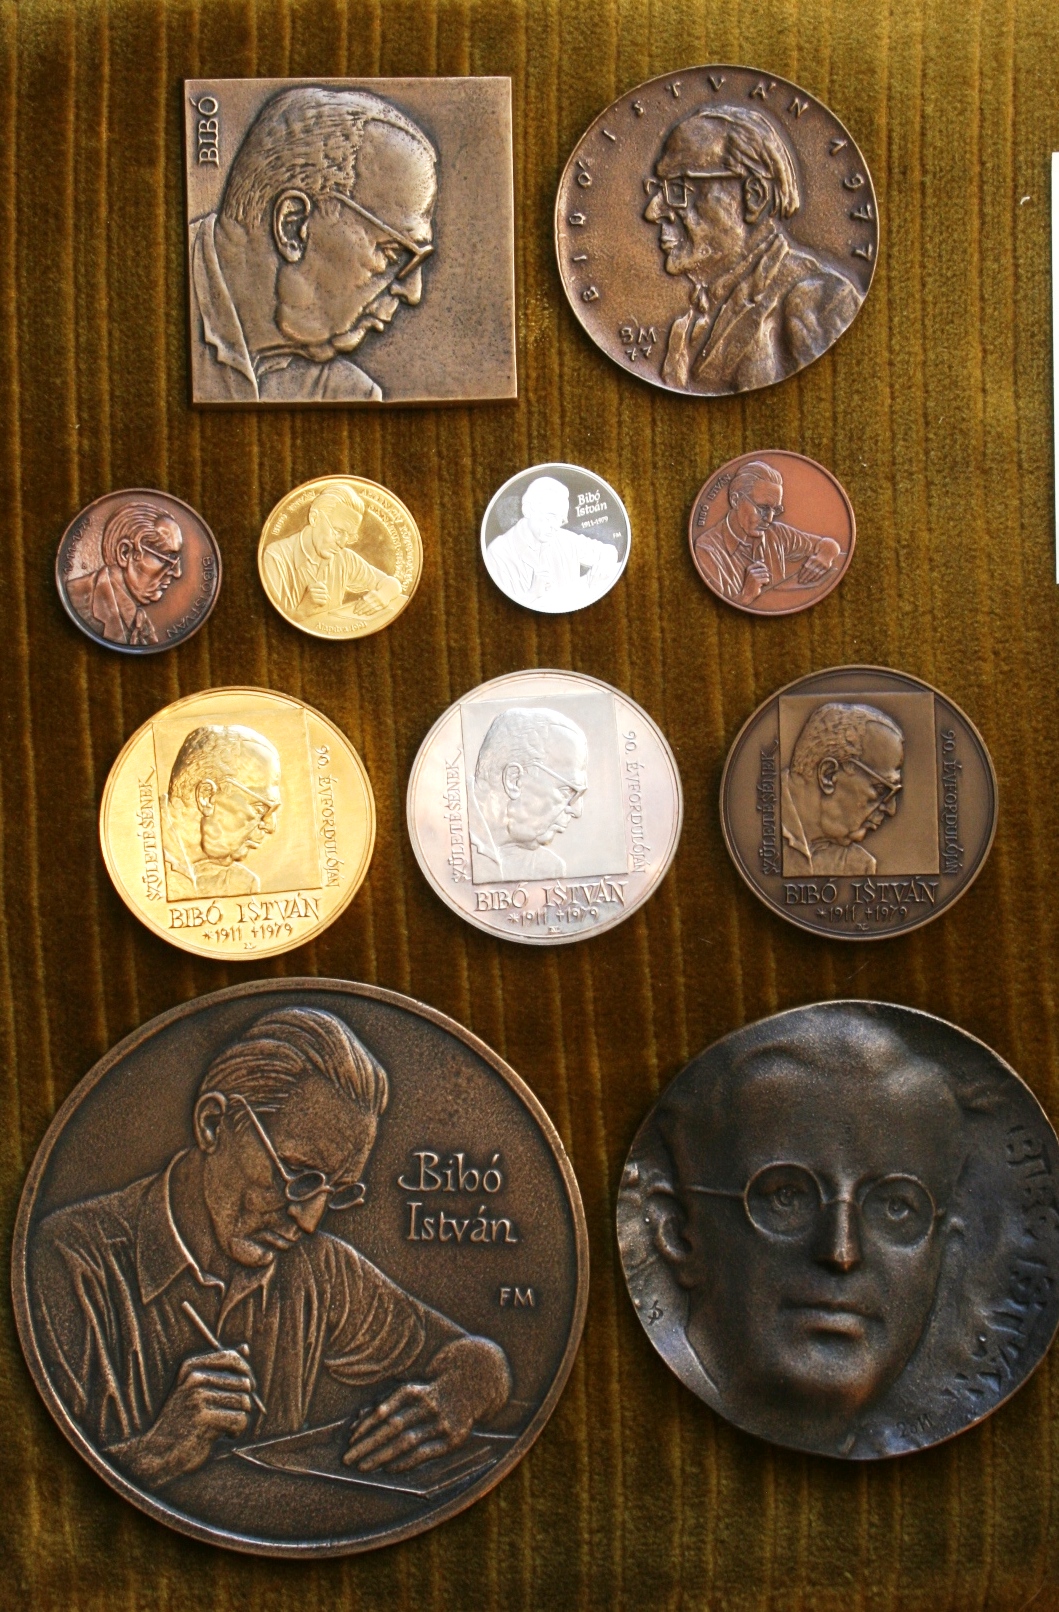 István Bibó's memorial coins and plaquettes.Masters: Nagy, Lajos 2001; Borsos, Miklós 1977; Fritz, Mihály 2011; Bartos, Endre 1990s; Szabó, György 2011, Dudás, Sándor 2011.